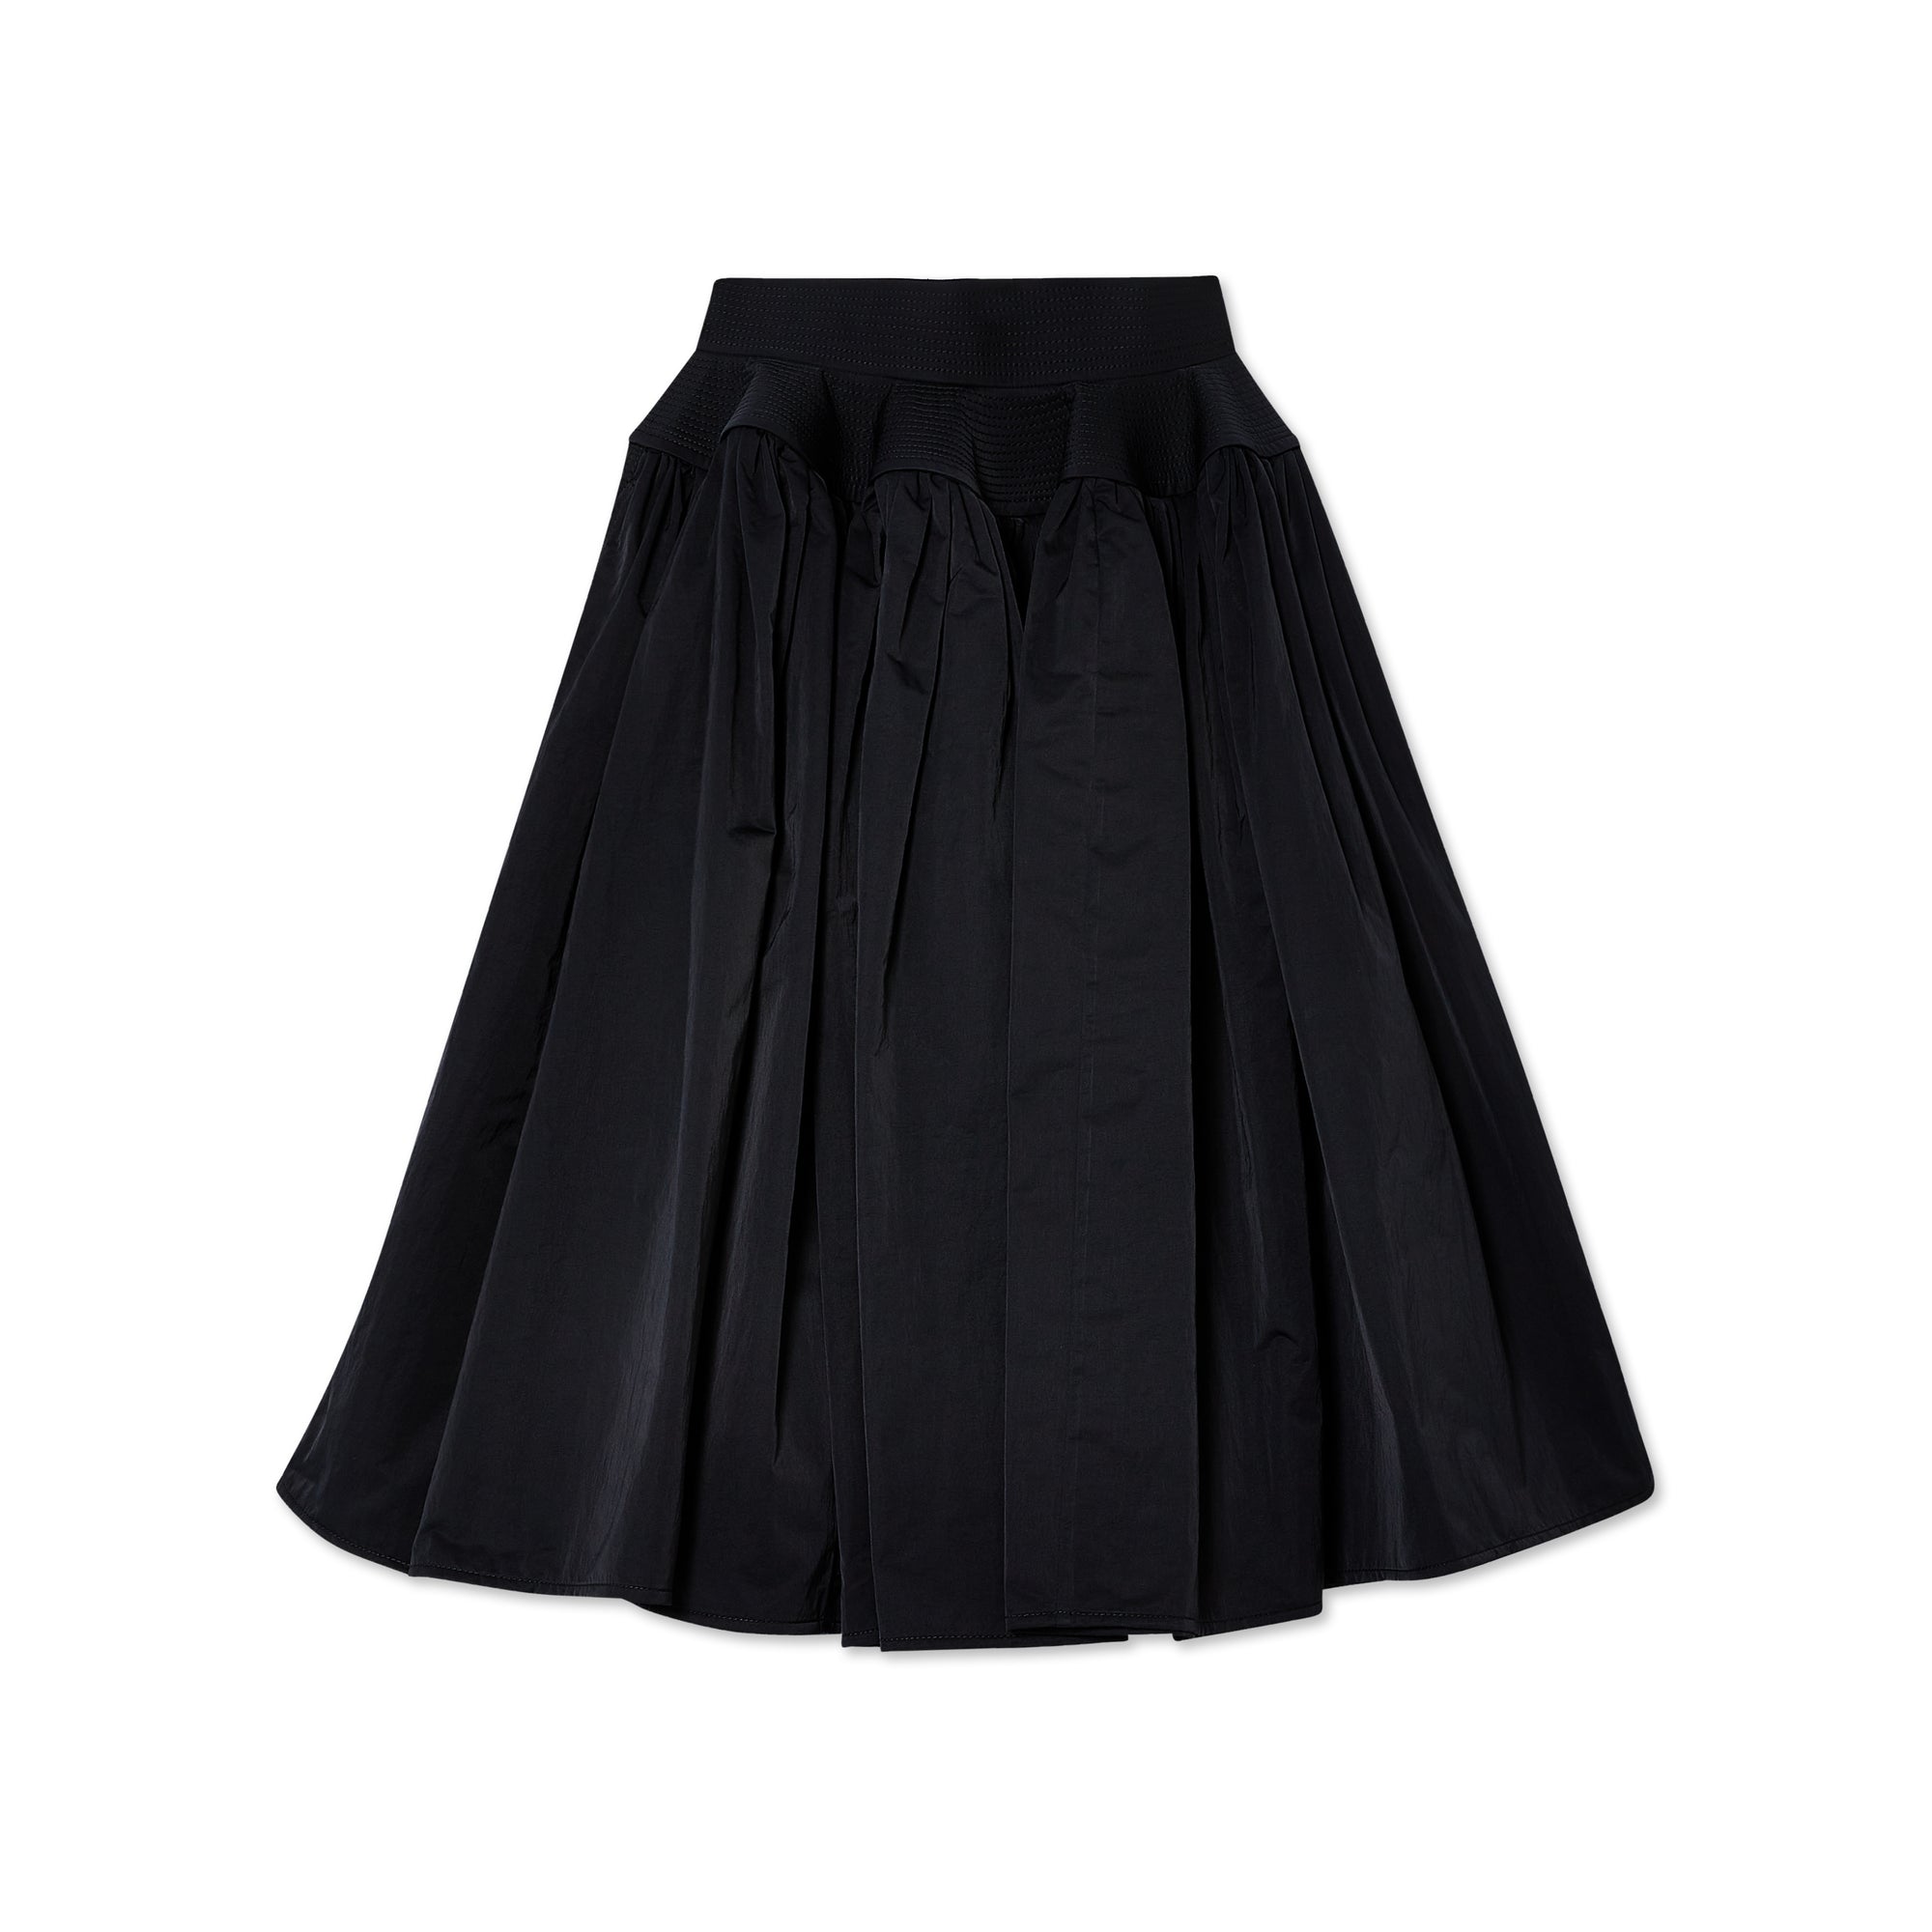 Bottega Veneta - Women’s Skirt - (Black) view 1